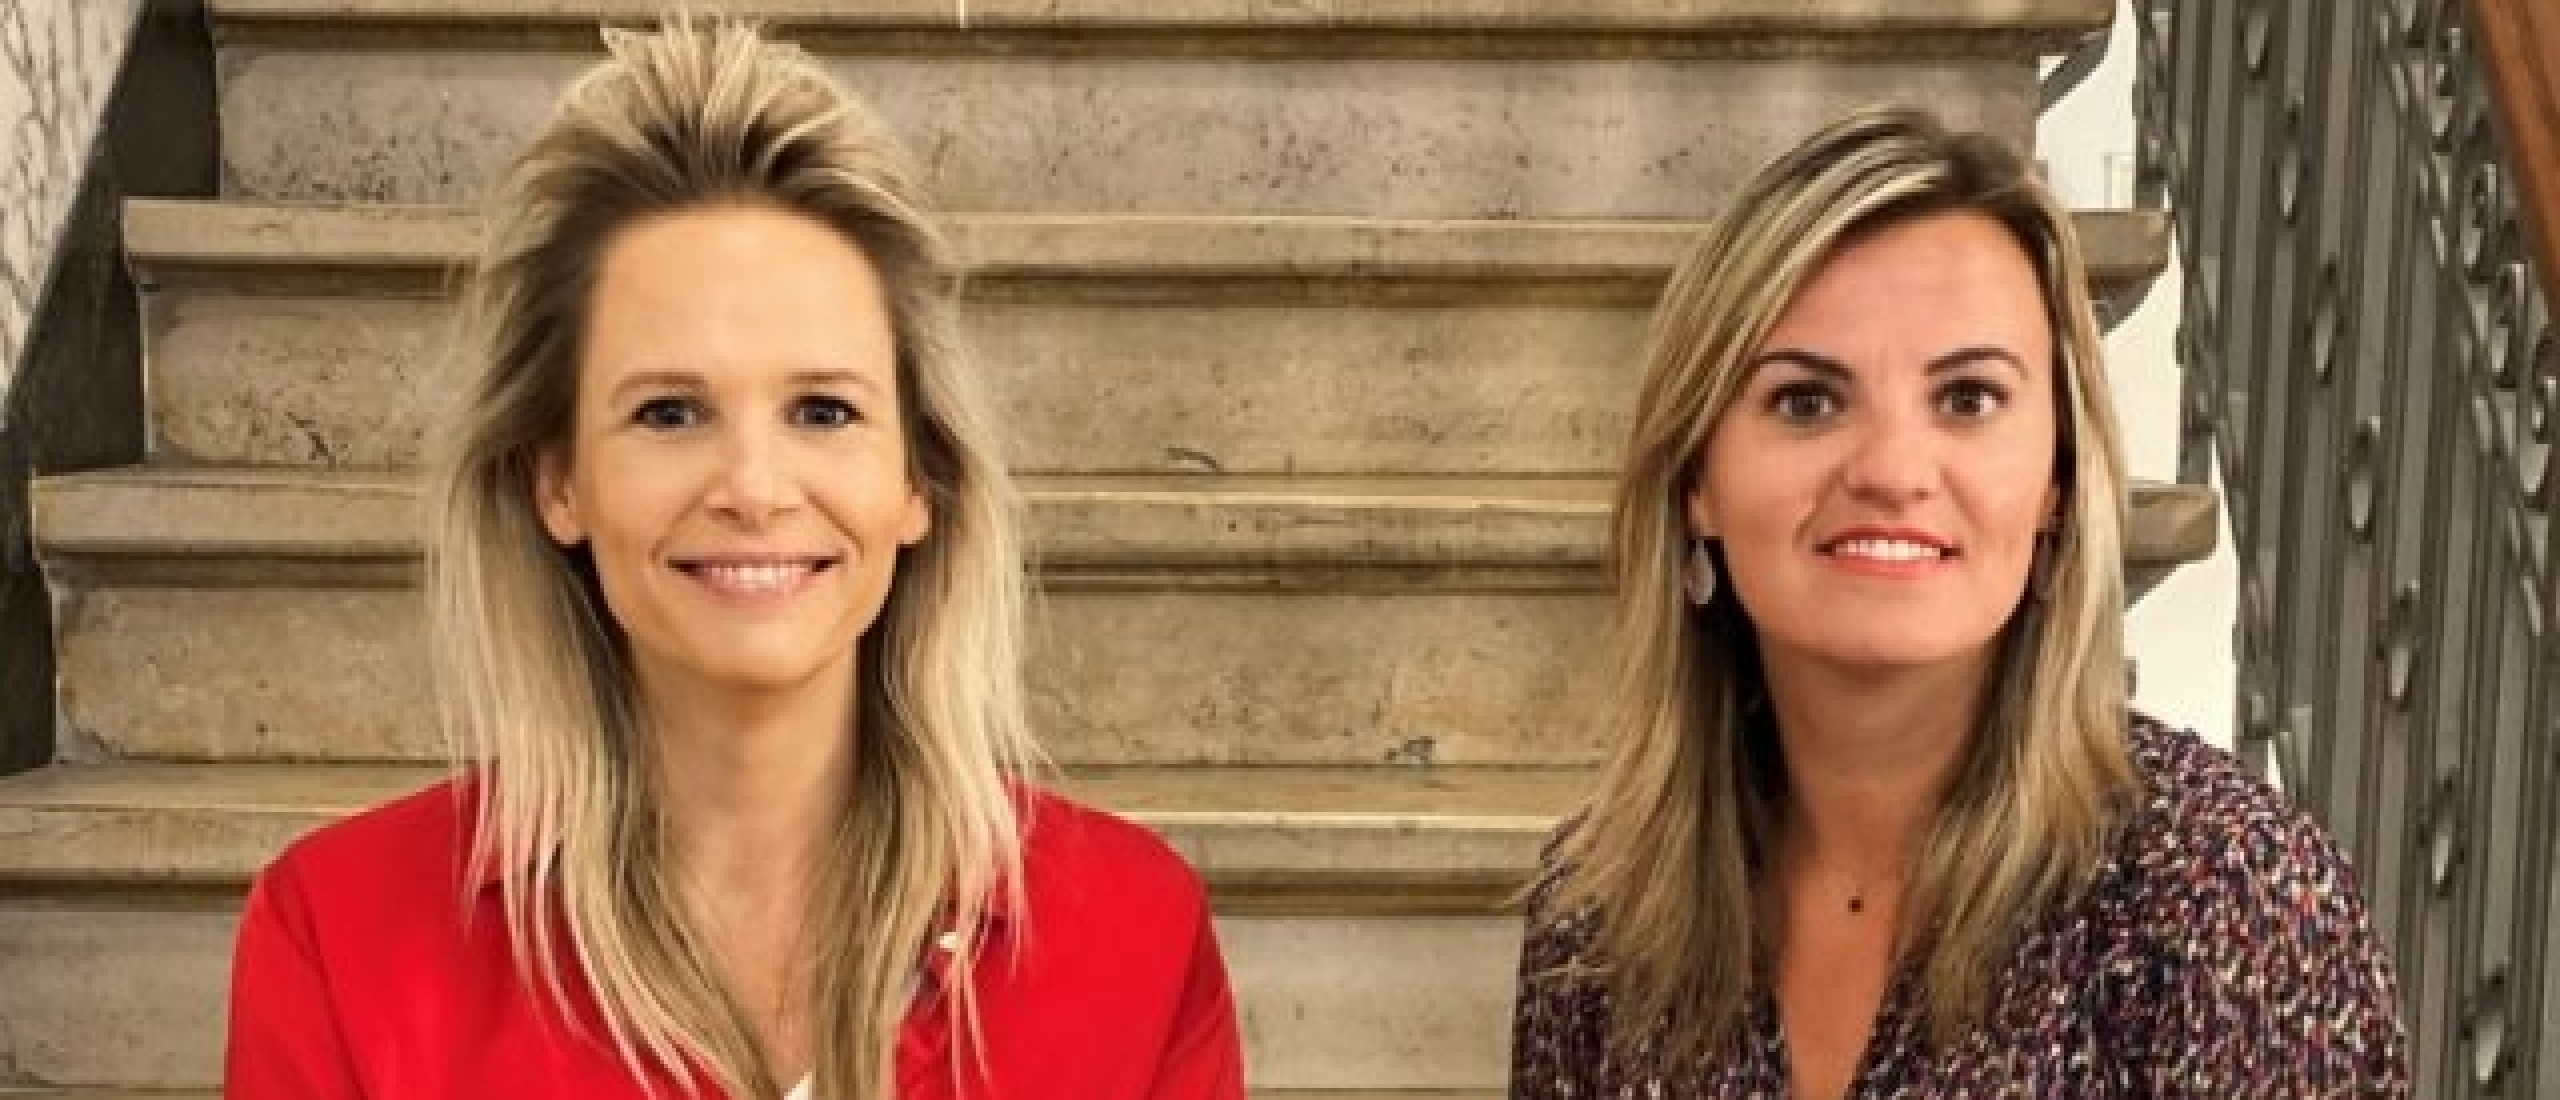 Annelou de Groot in podcast Vastgoedvrouwen: ‘Ik ga altijd voor een win-winsituatie’